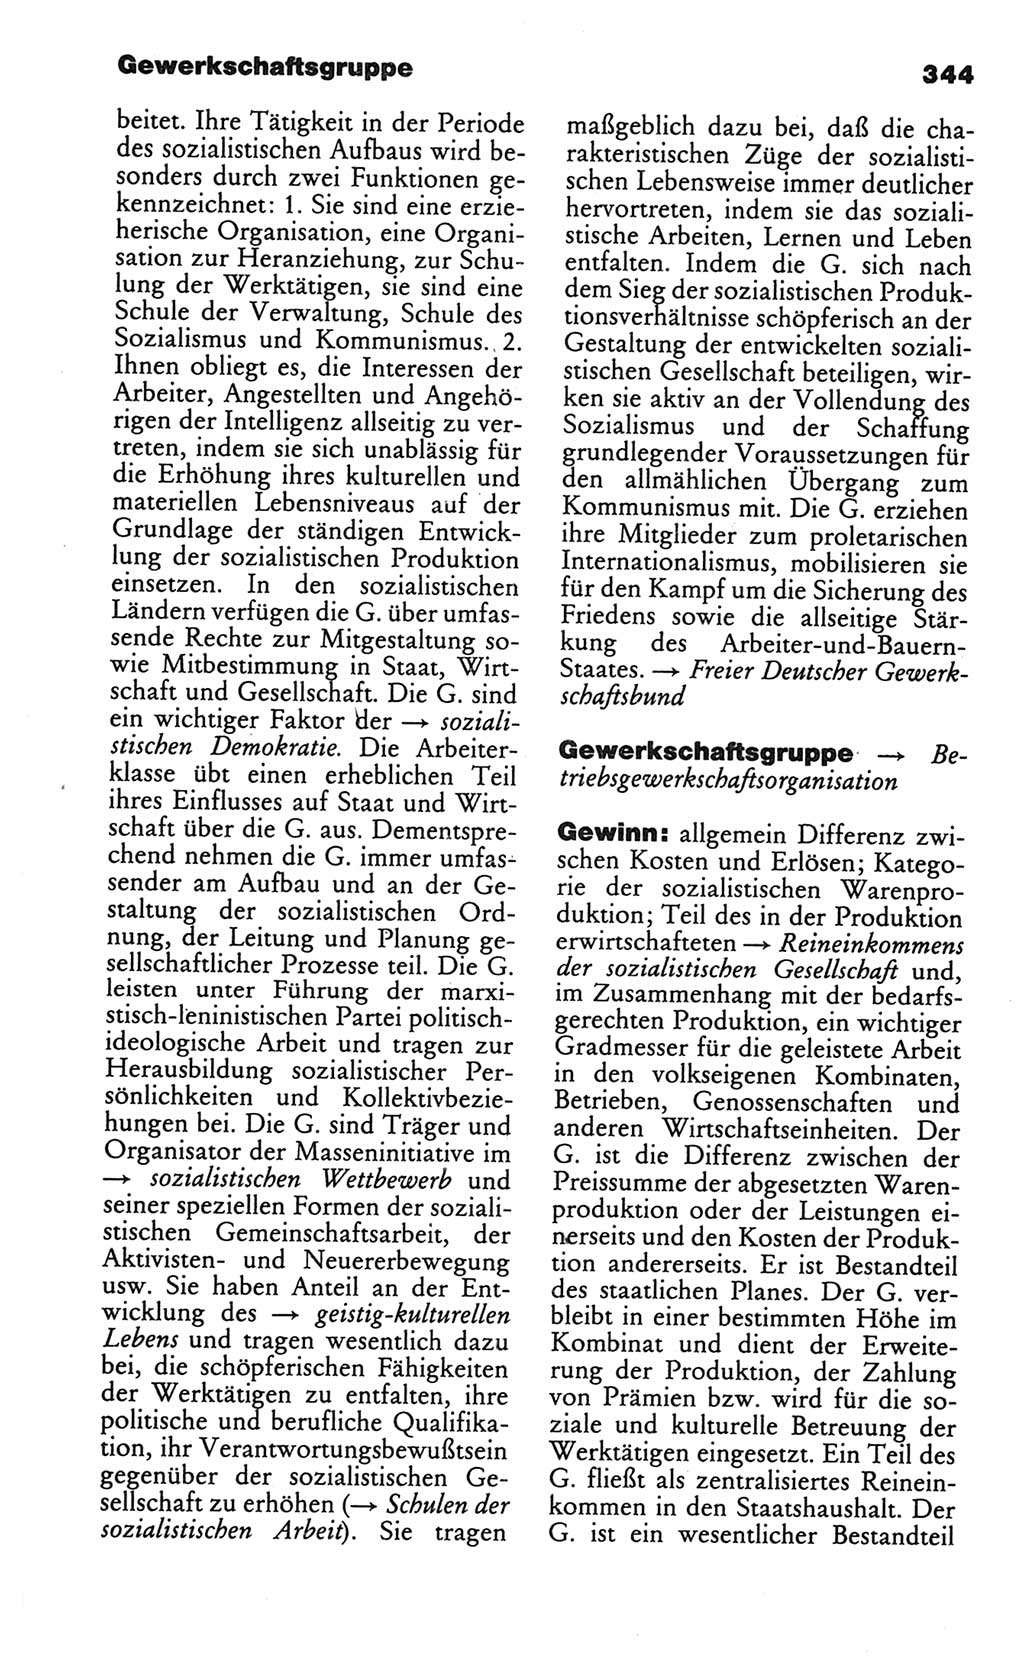 Kleines politisches Wörterbuch [Deutsche Demokratische Republik (DDR)] 1986, Seite 344 (Kl. pol. Wb. DDR 1986, S. 344)